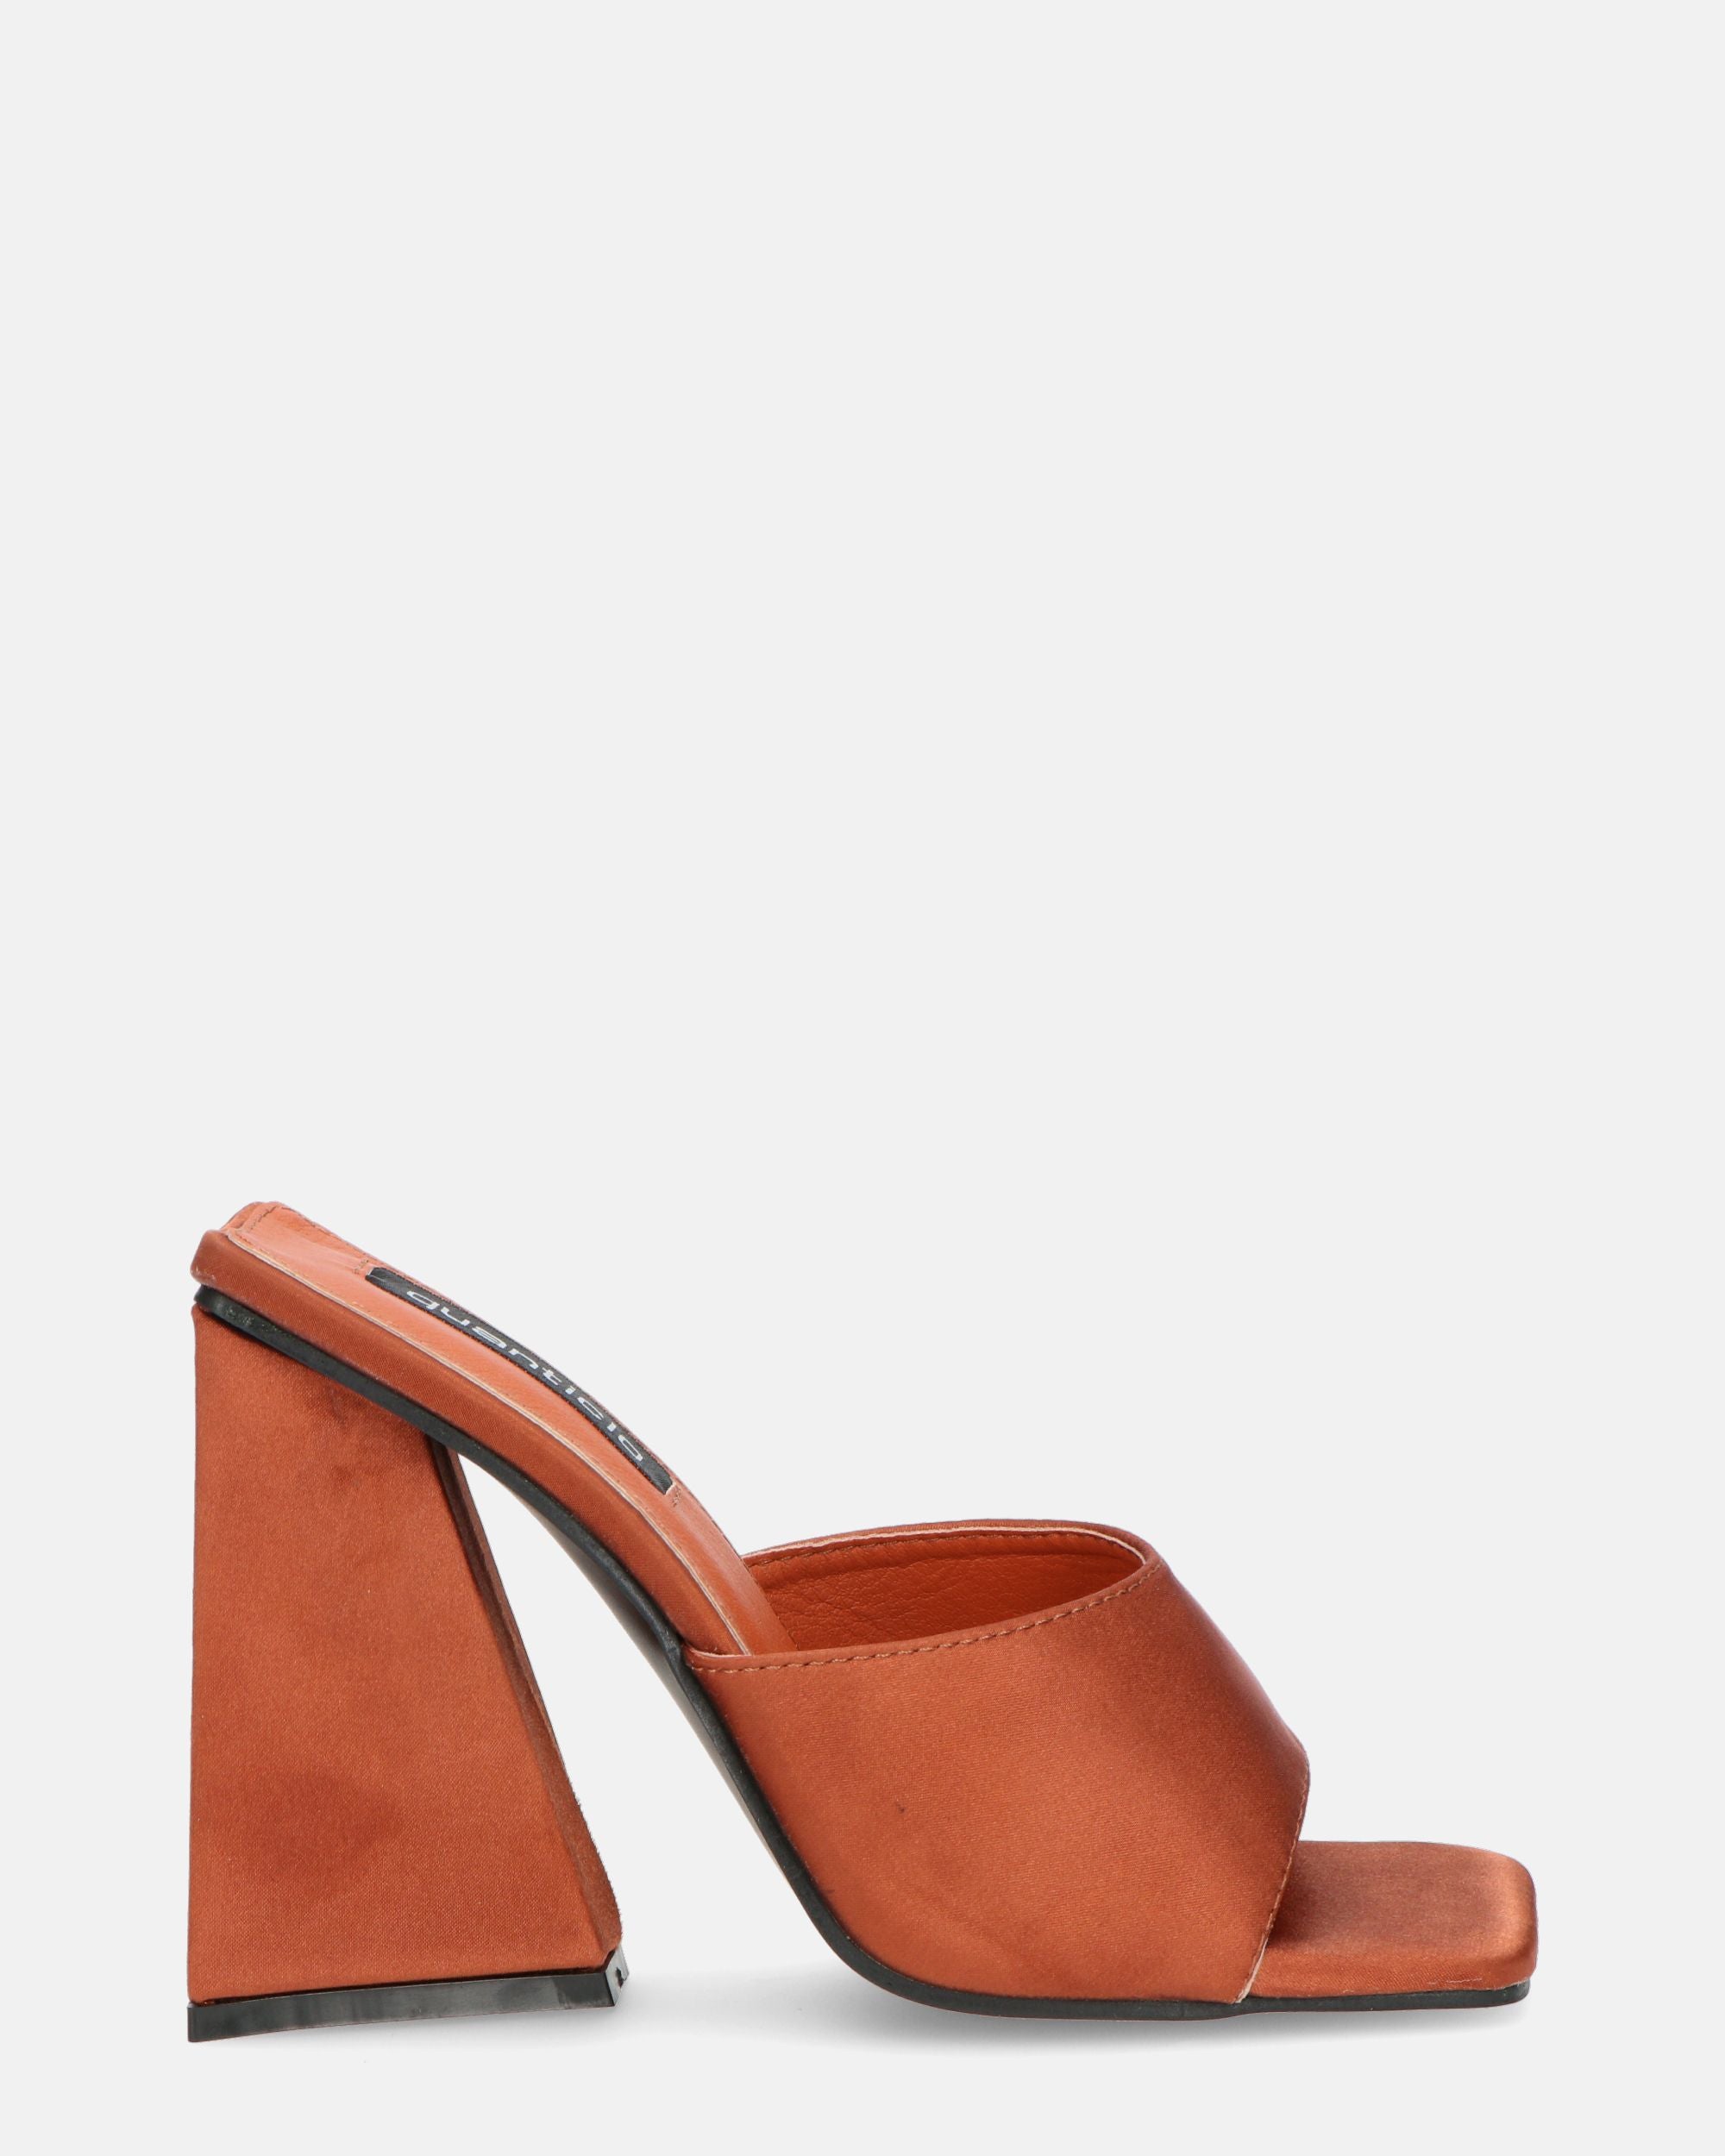 KAMELYA - copper-colored lycra square heel sandals